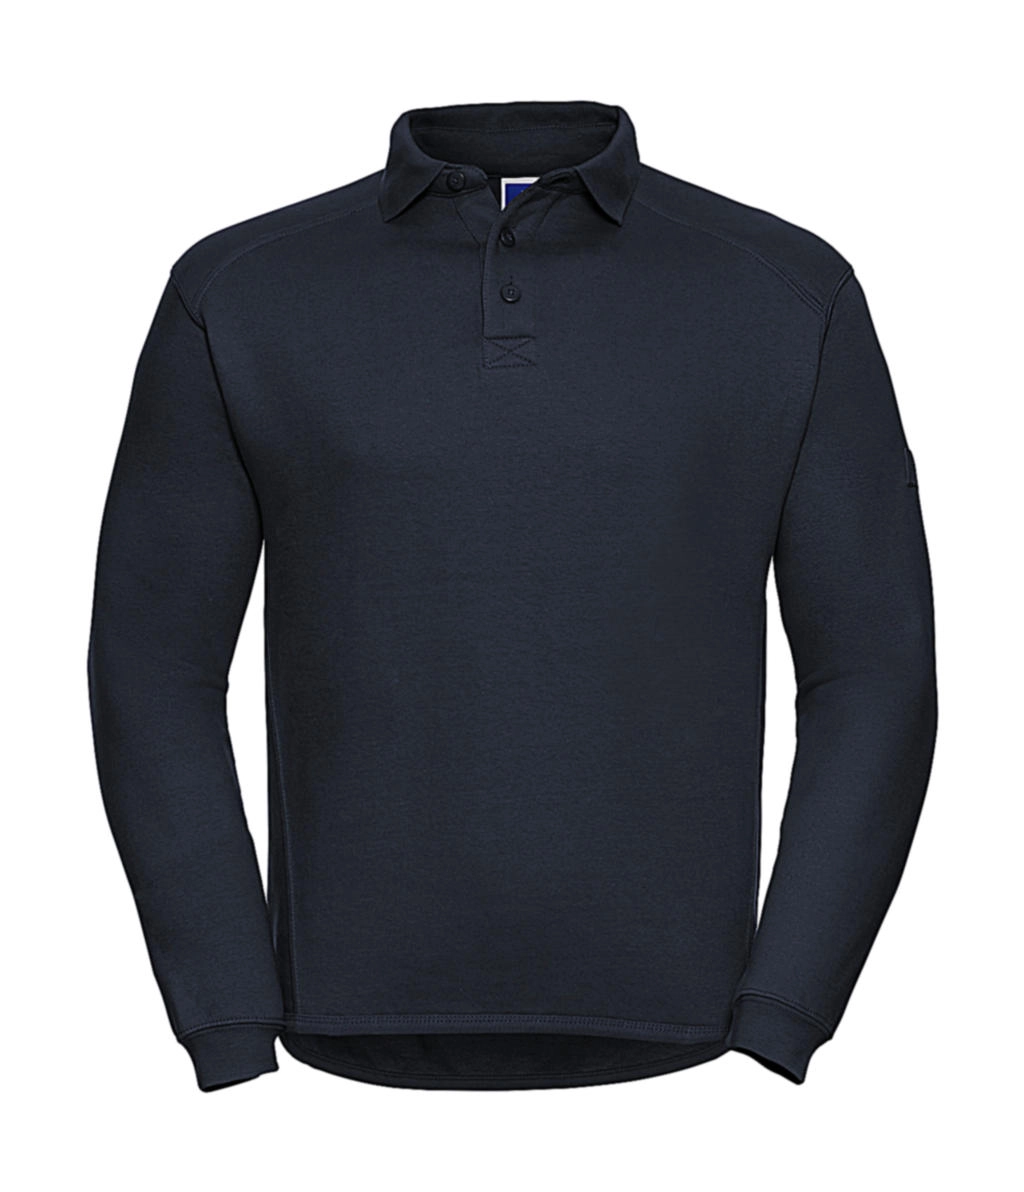 Heavy Duty Collar Sweatshirt zum Besticken und Bedrucken in der Farbe French Navy mit Ihren Logo, Schriftzug oder Motiv.